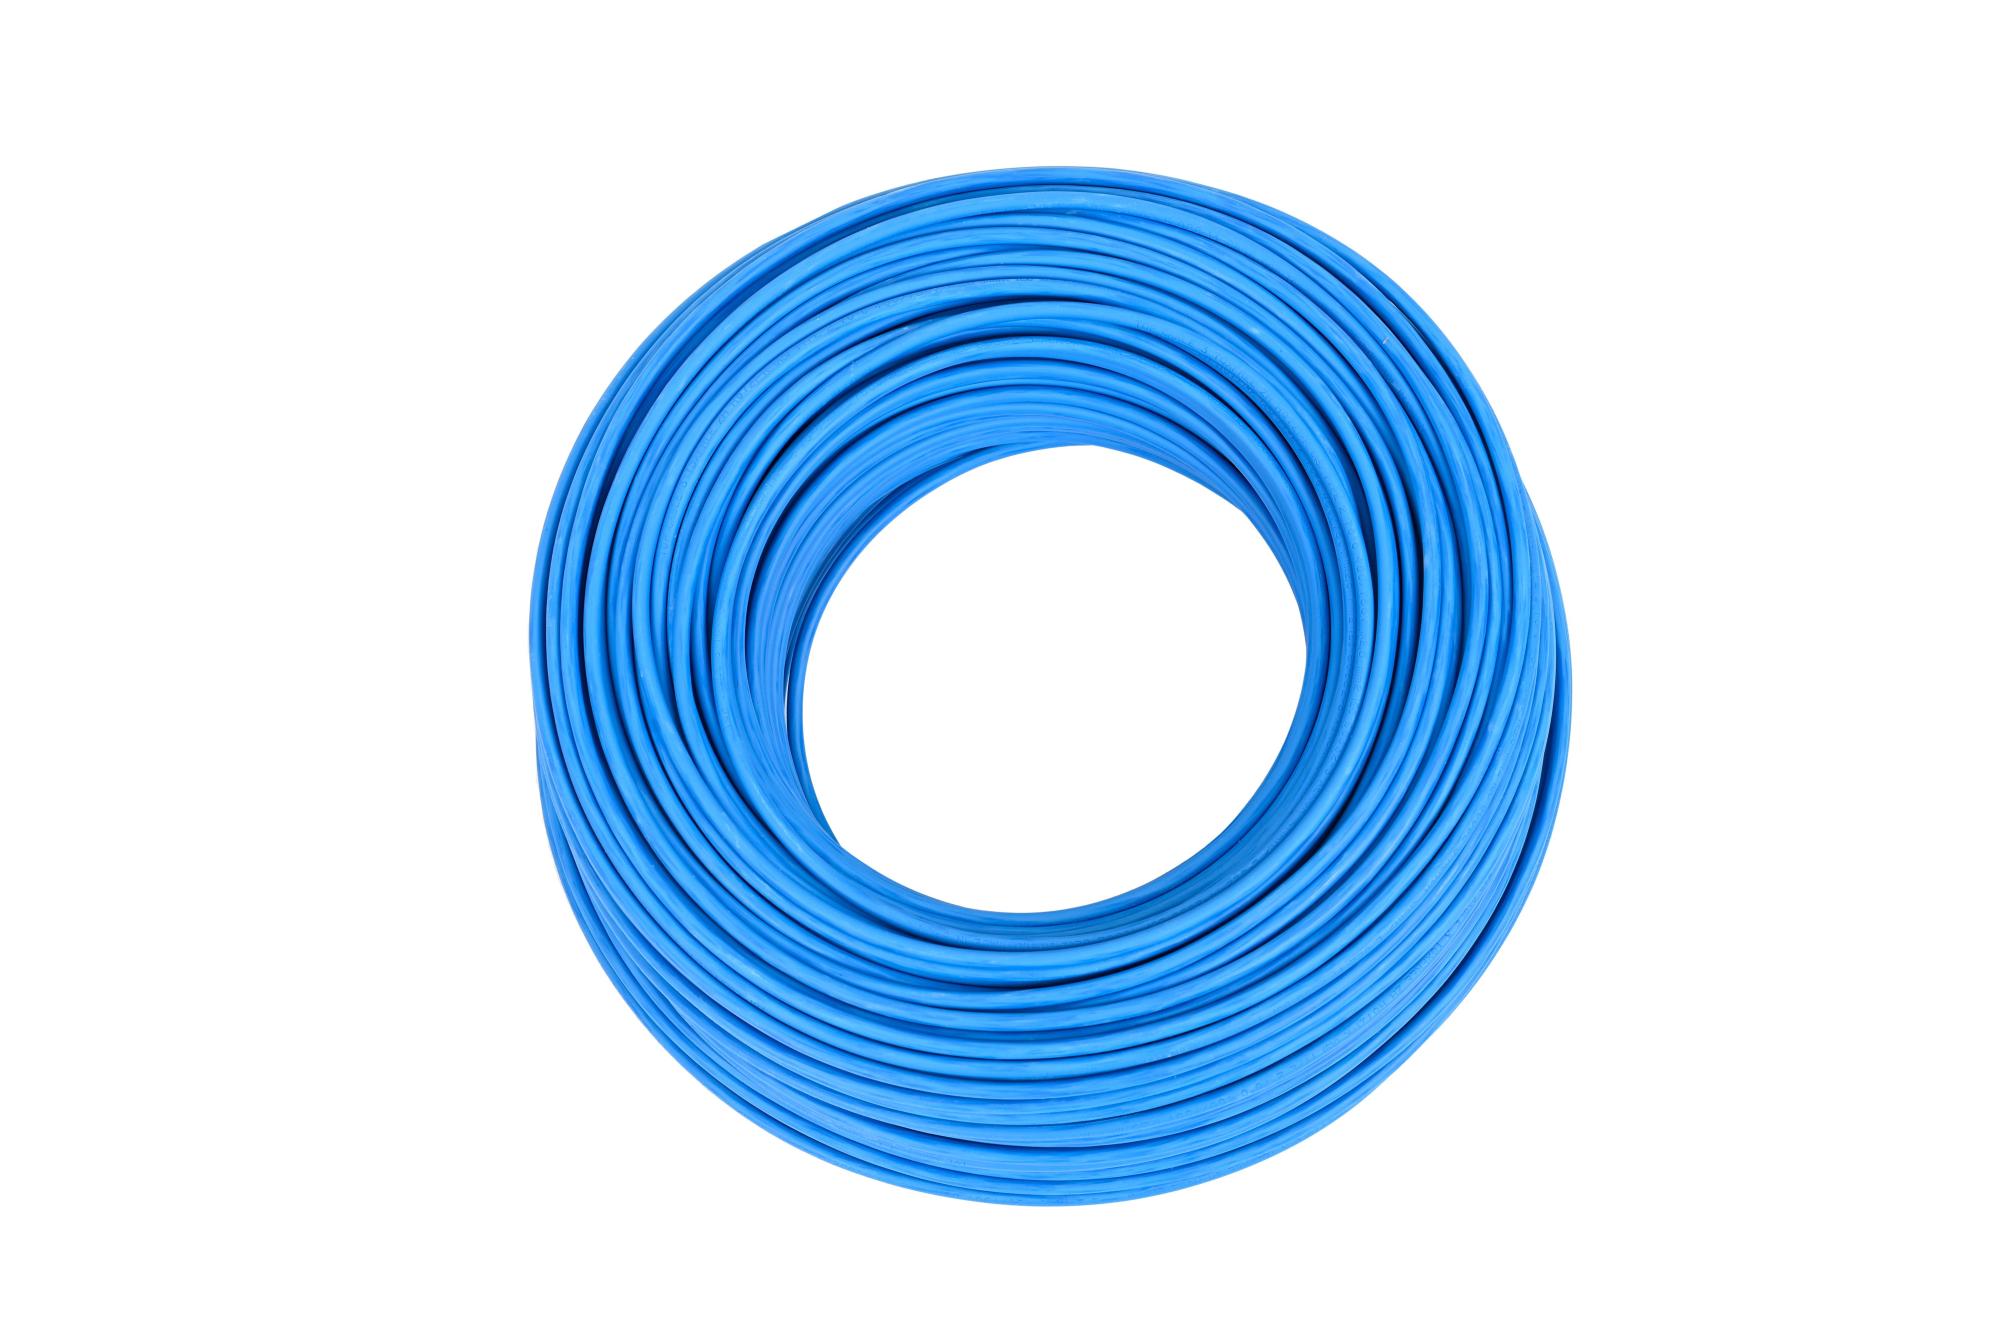 Cable eléctrico lexman h07z1-k azul 10 mm² 25 m